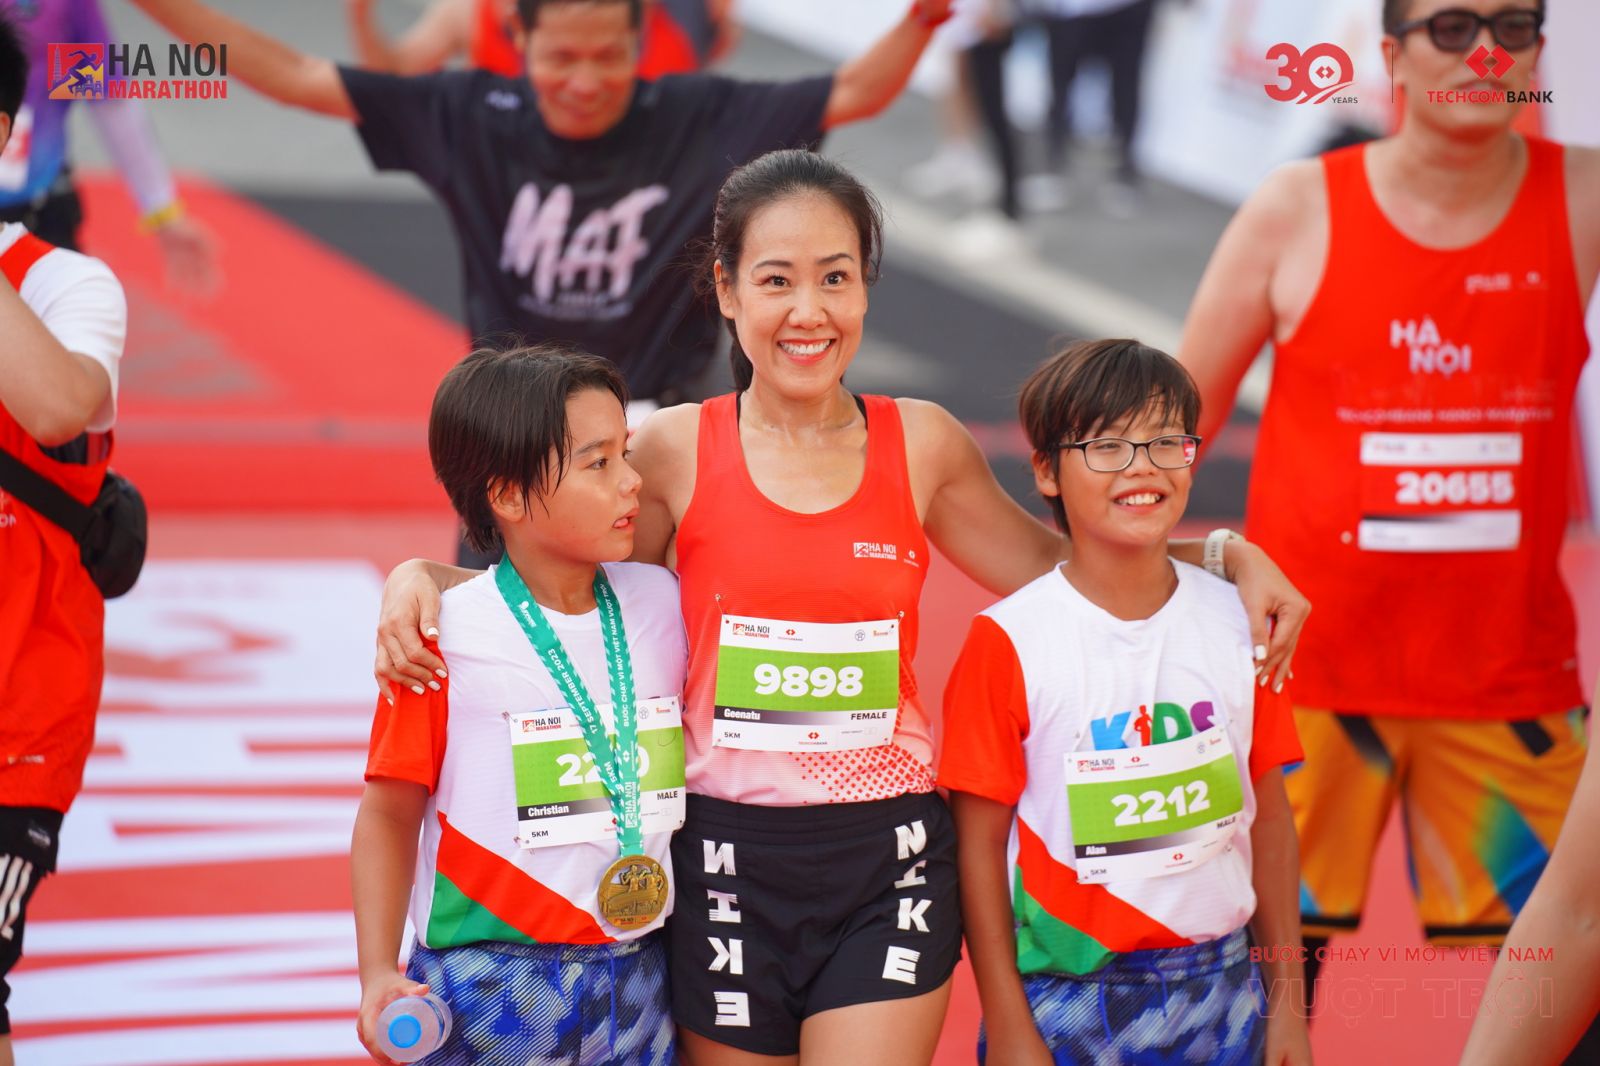 CMO Thái Diễm Minh Tú lan toả tinh thần thể thao cùng các con